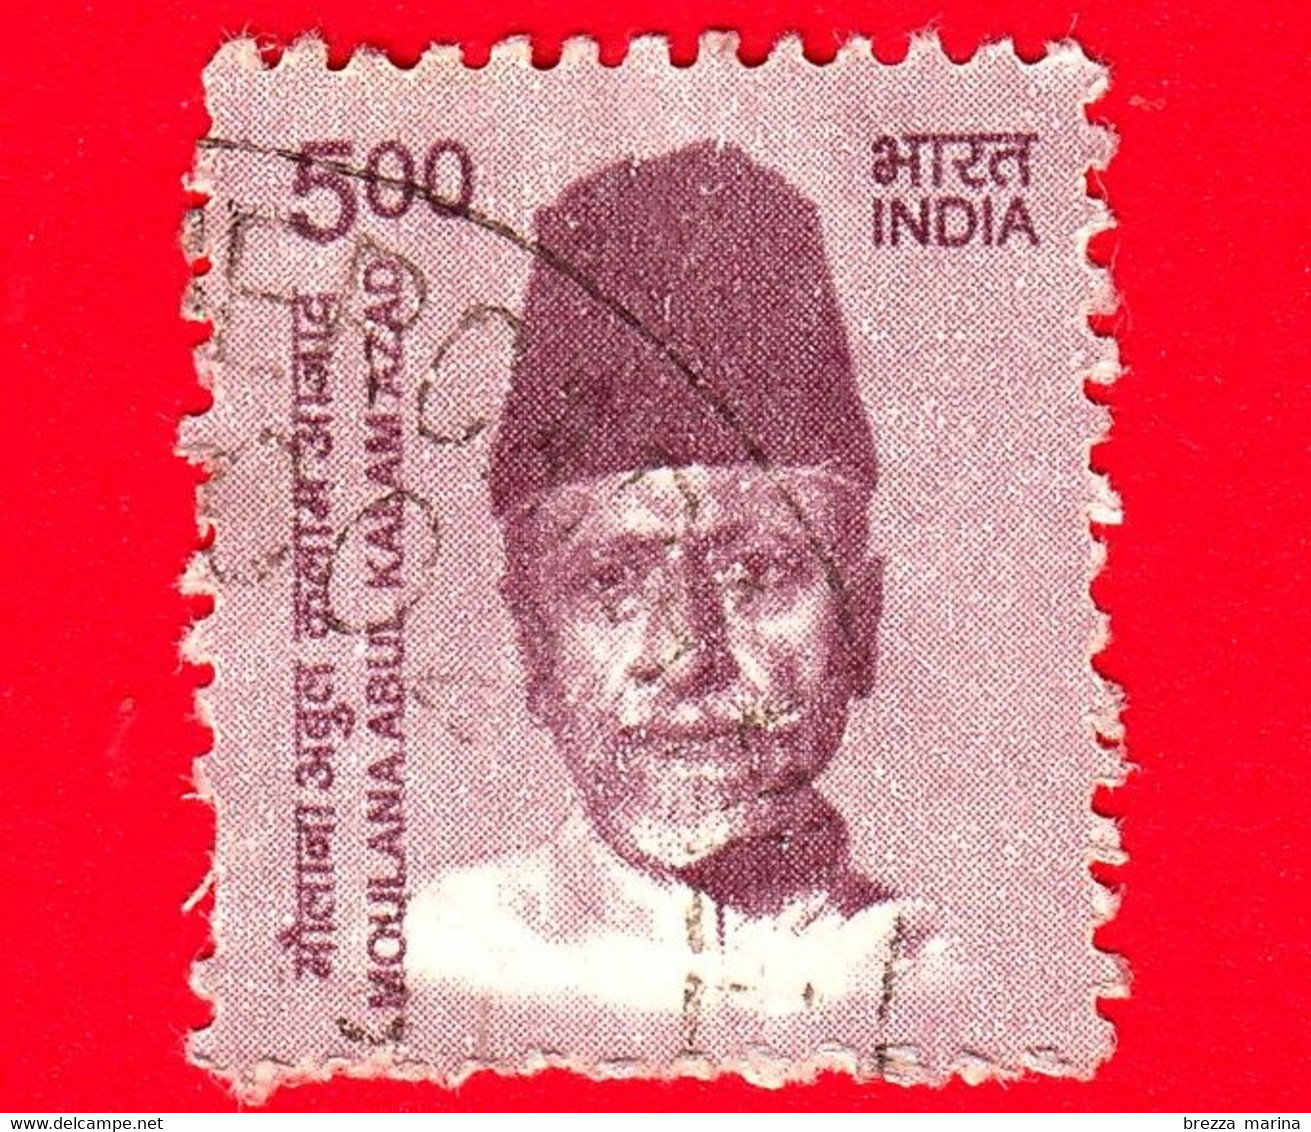 INDIA  - Usato - 2015 - Creatori Dell'India - Moulana Abul Kalam Azad (1888-1958), Politico E Scrittore - 5 - Gebruikt